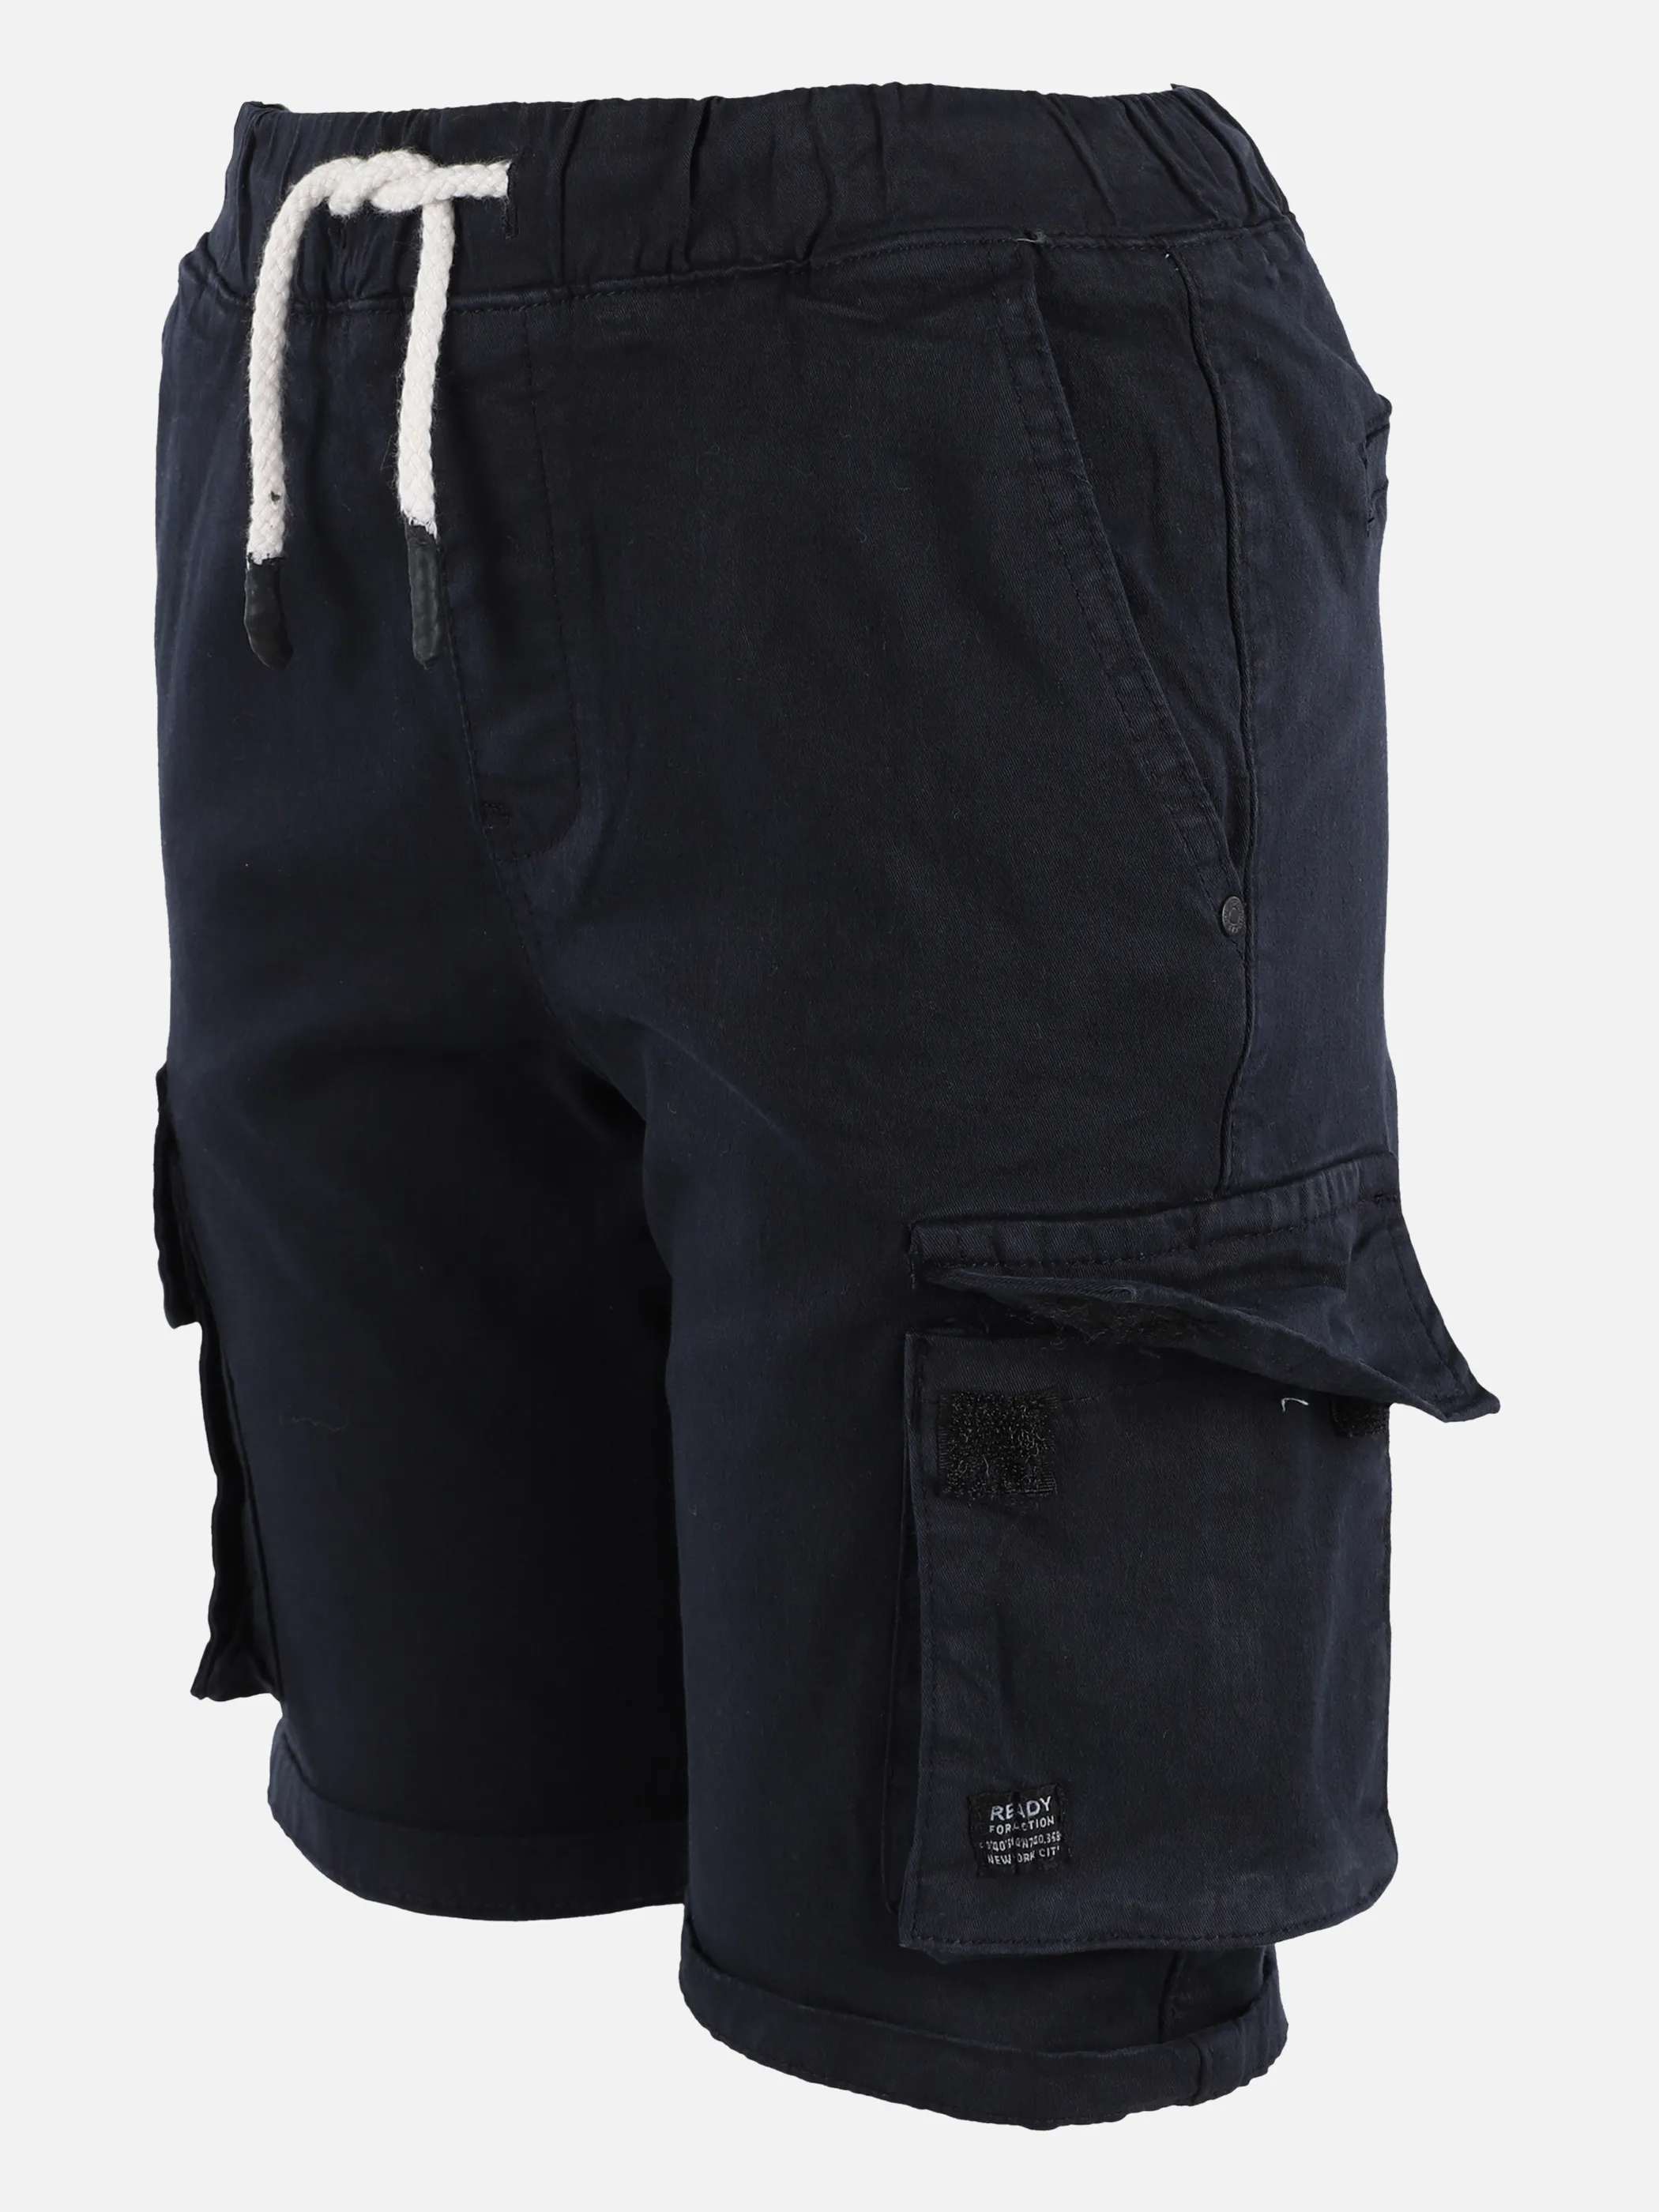 Stop + Go JJ Cargo Shorts in navy mit Taschen Blau 875519 D.BLAU 3